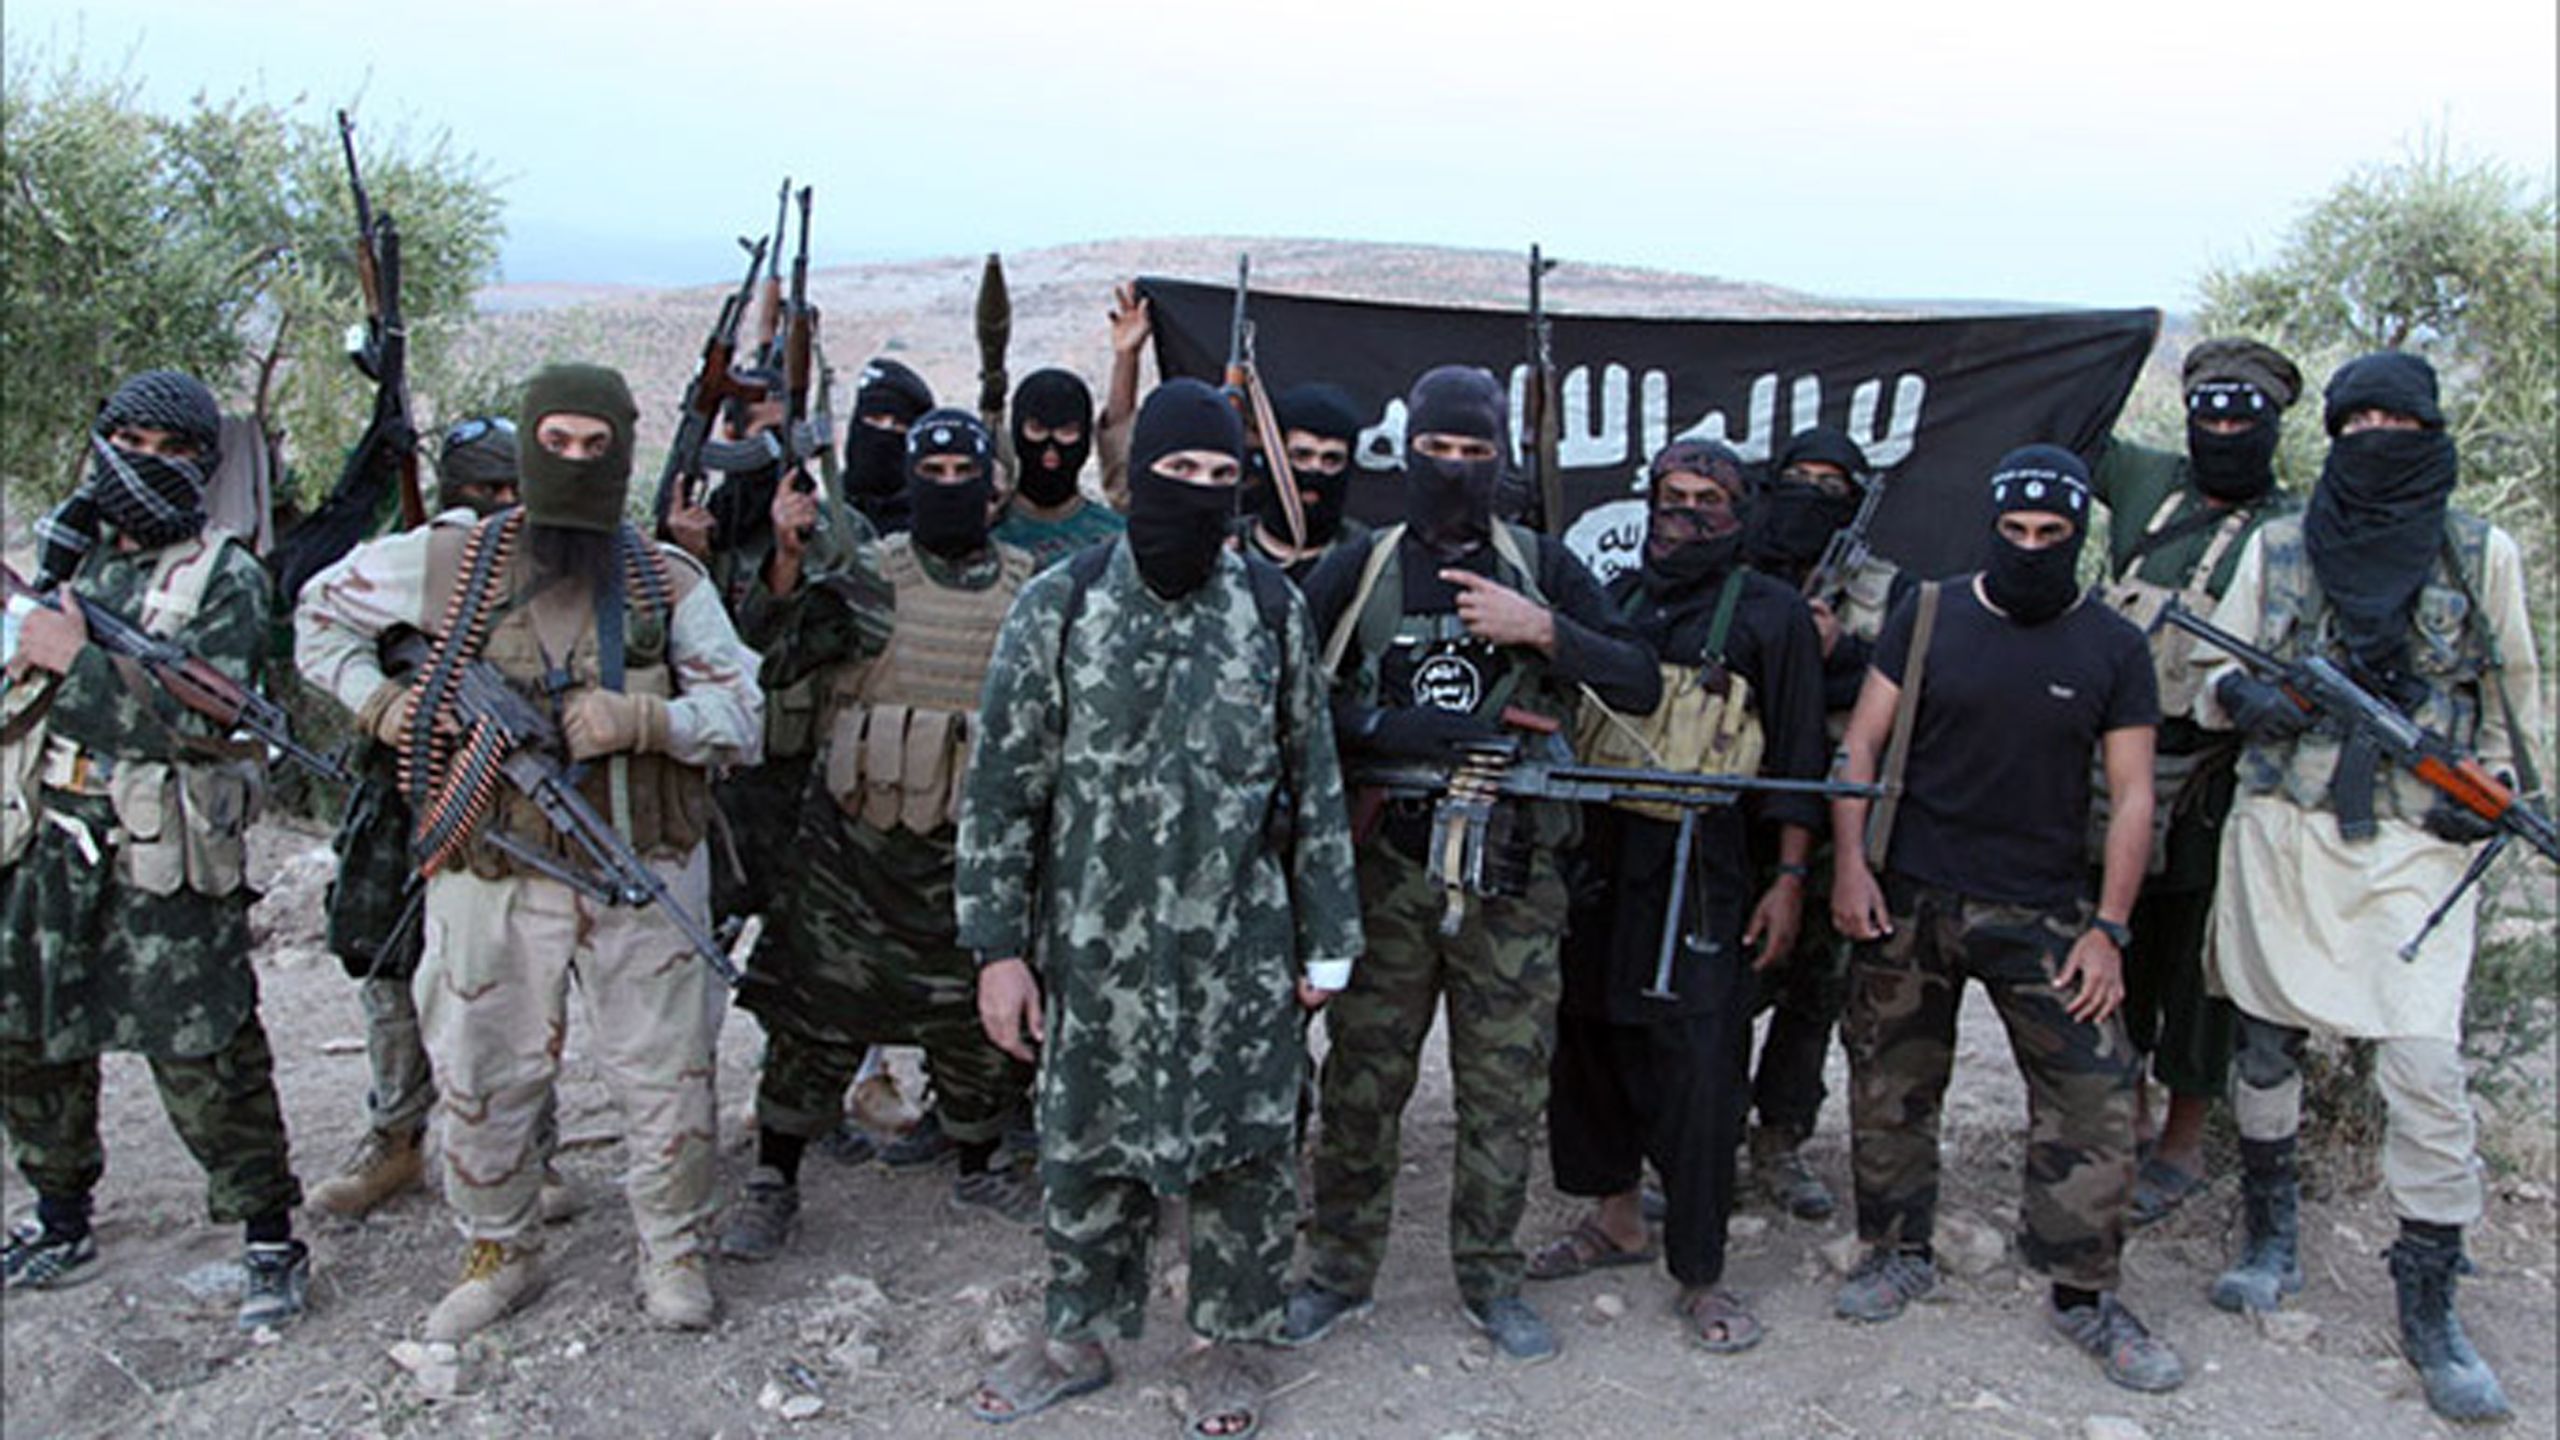 Киргизы террористы. Муджахиды Исламского государства. Одежда террористов.